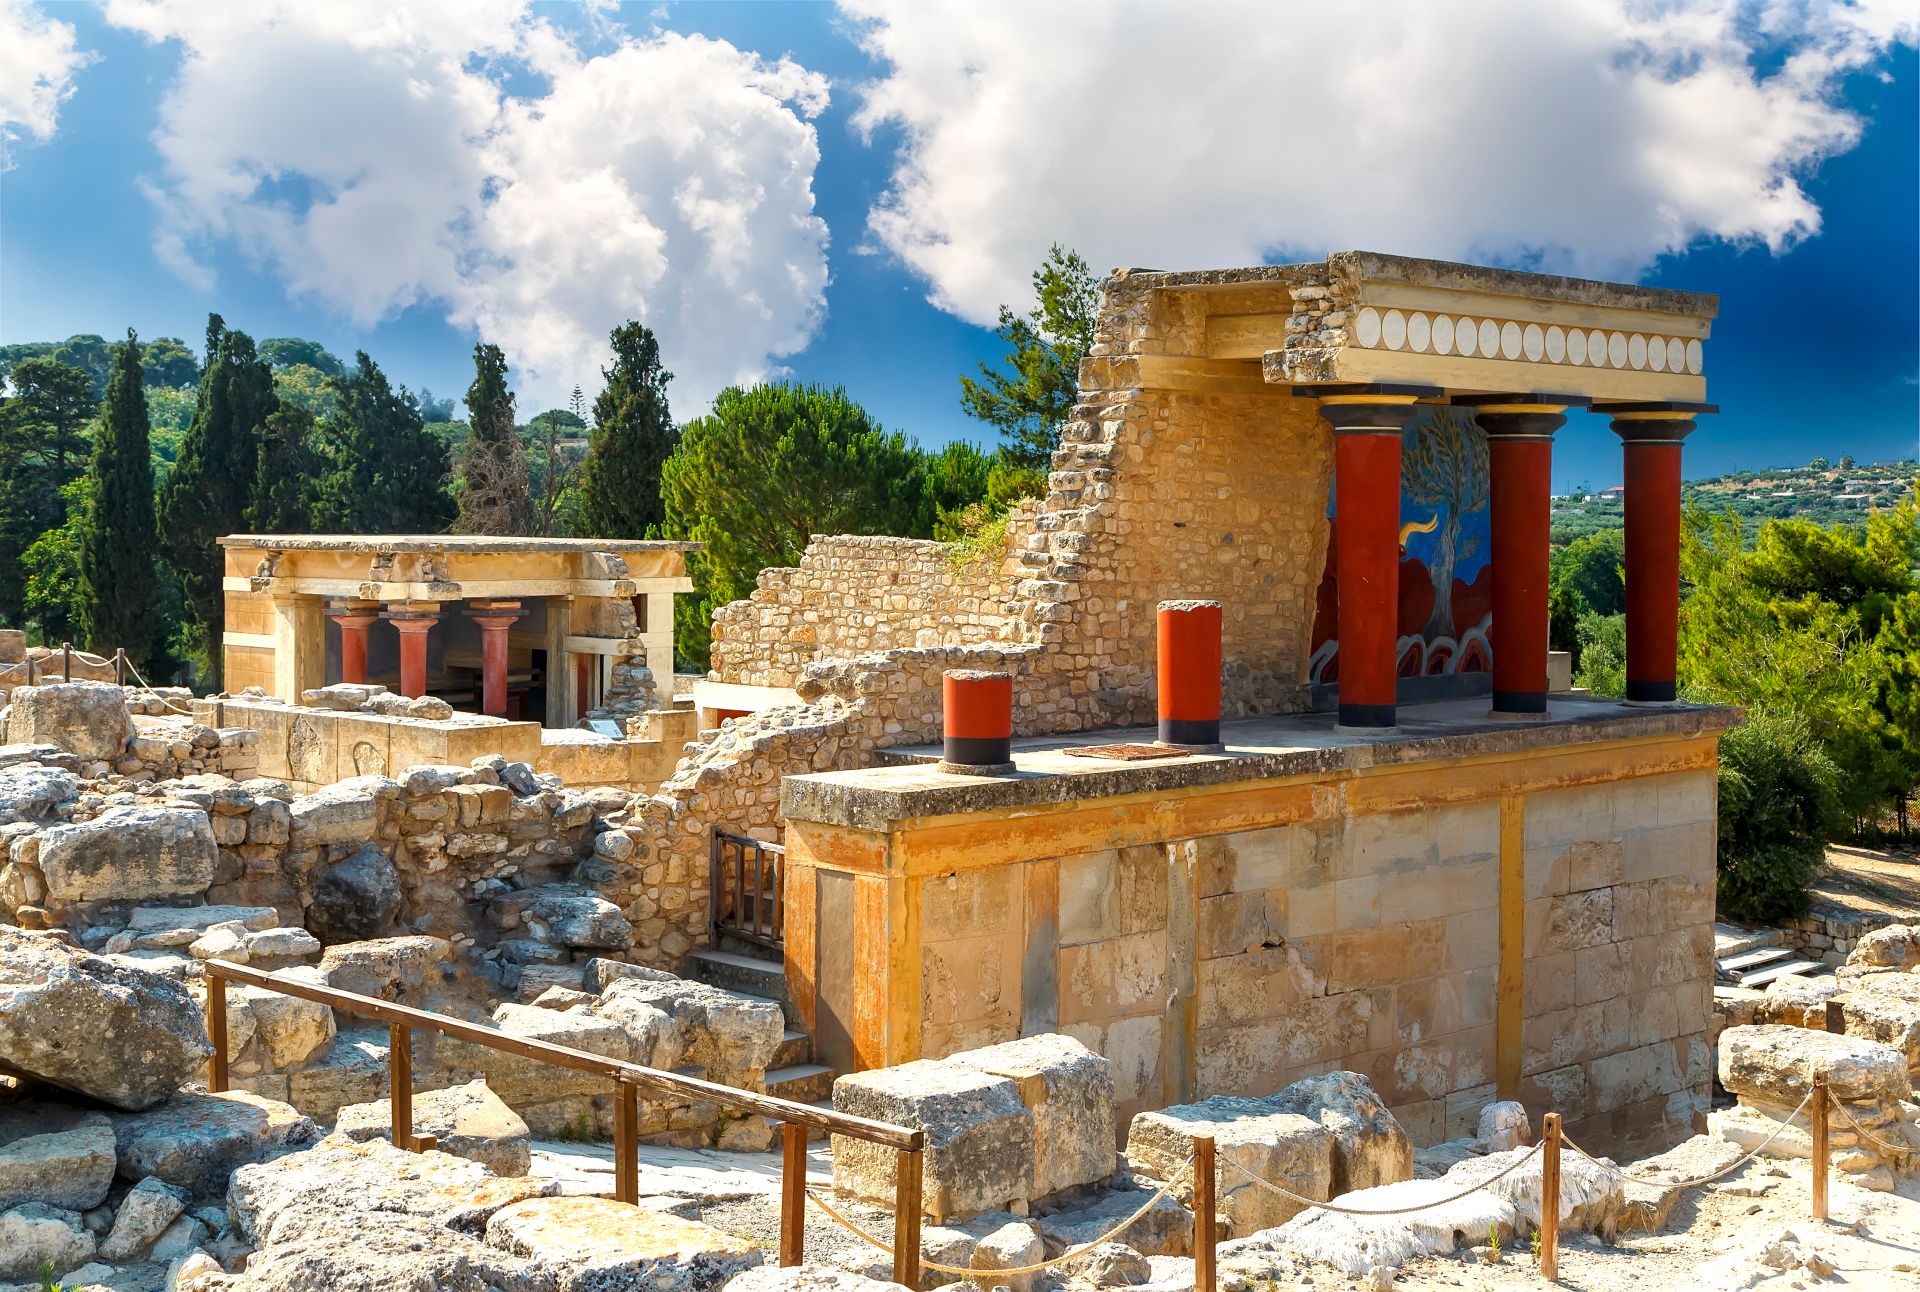 Knossos-Palace-At-Crete-Heraklion-Greece